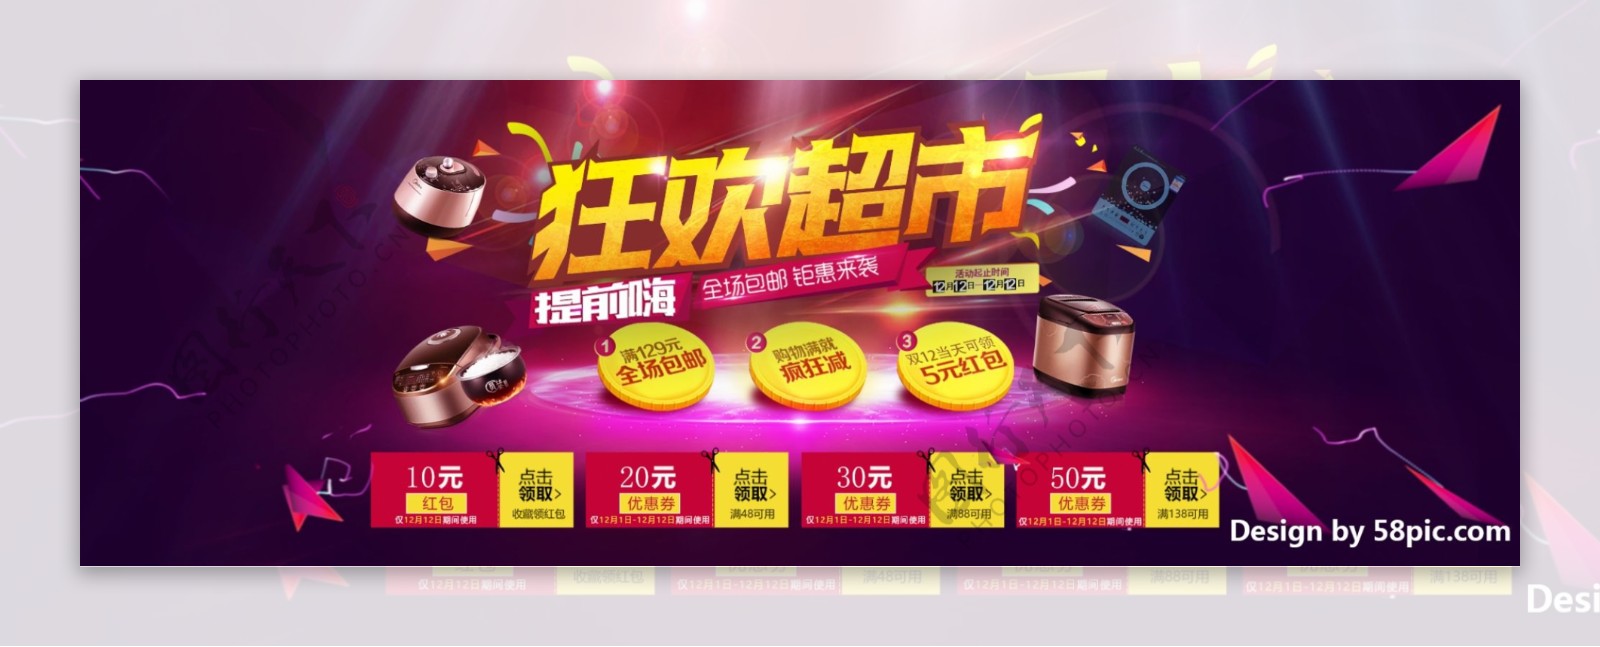 紫红炫酷光效家电狂欢超市超市节淘宝电商海报banner